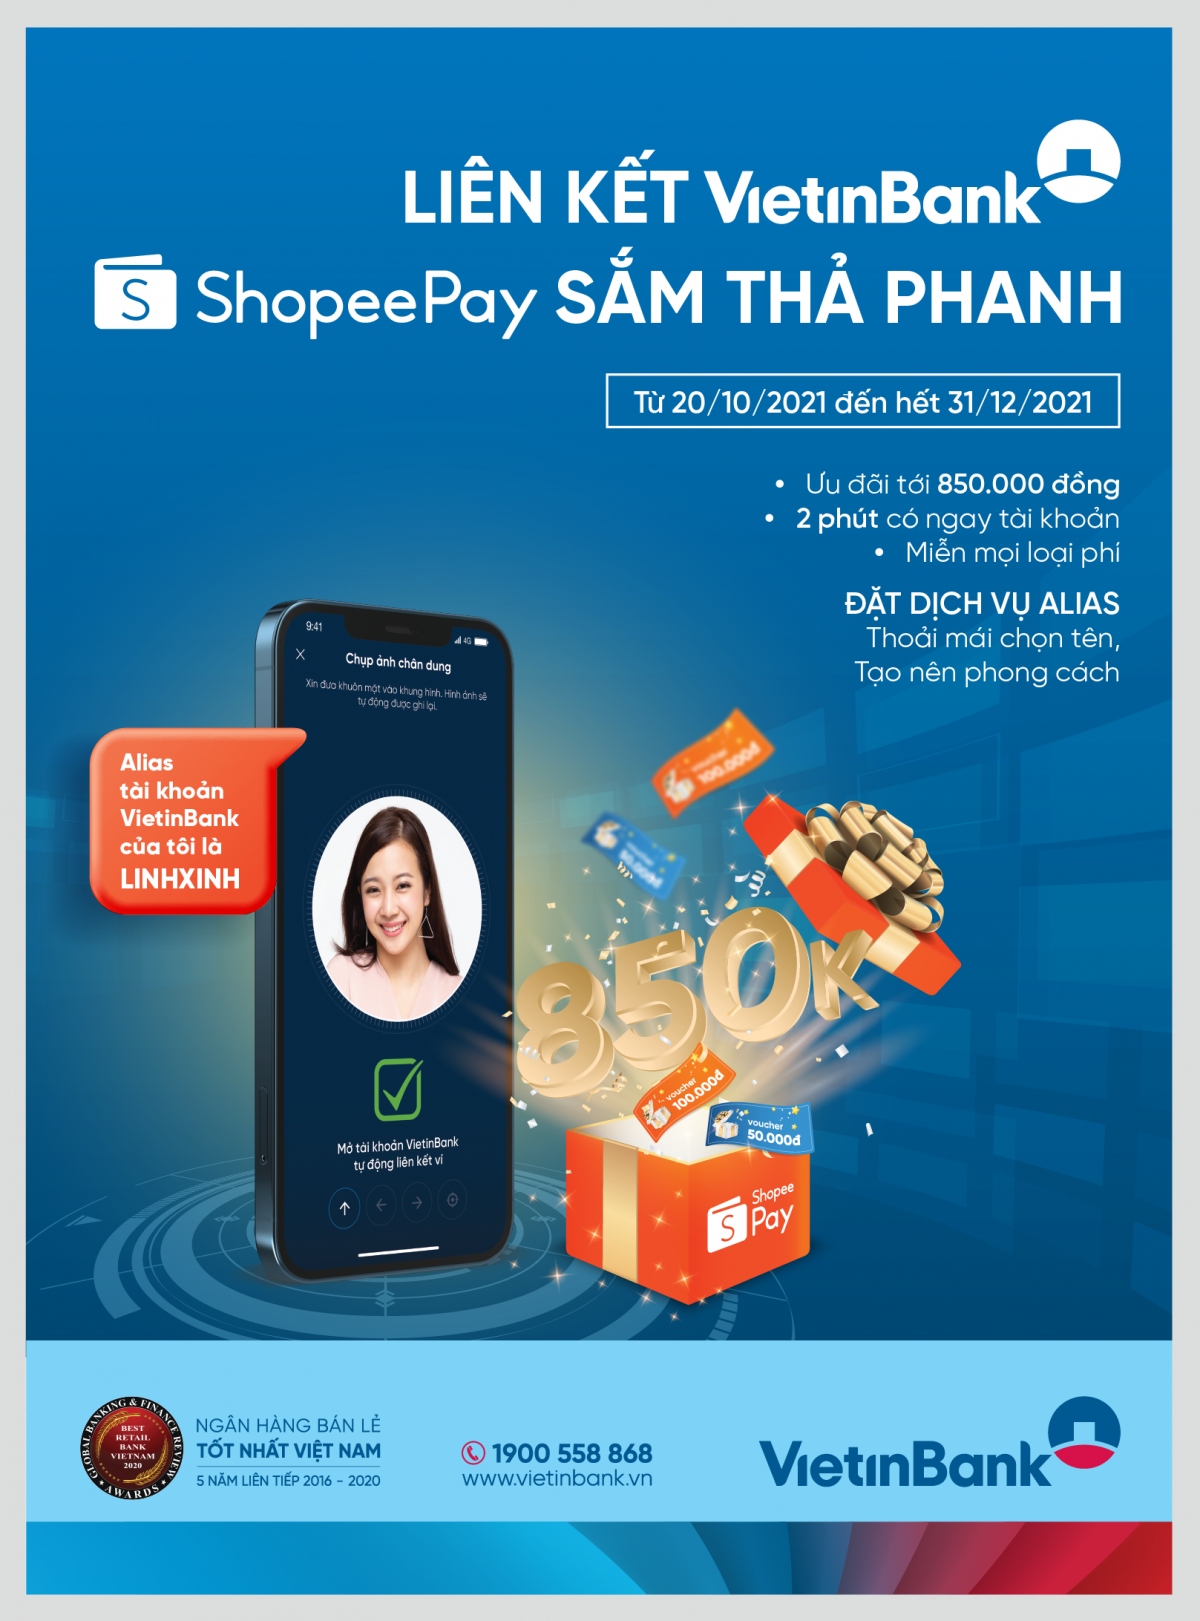 Liên kết VietinBank - Shopee sắm thả phanh